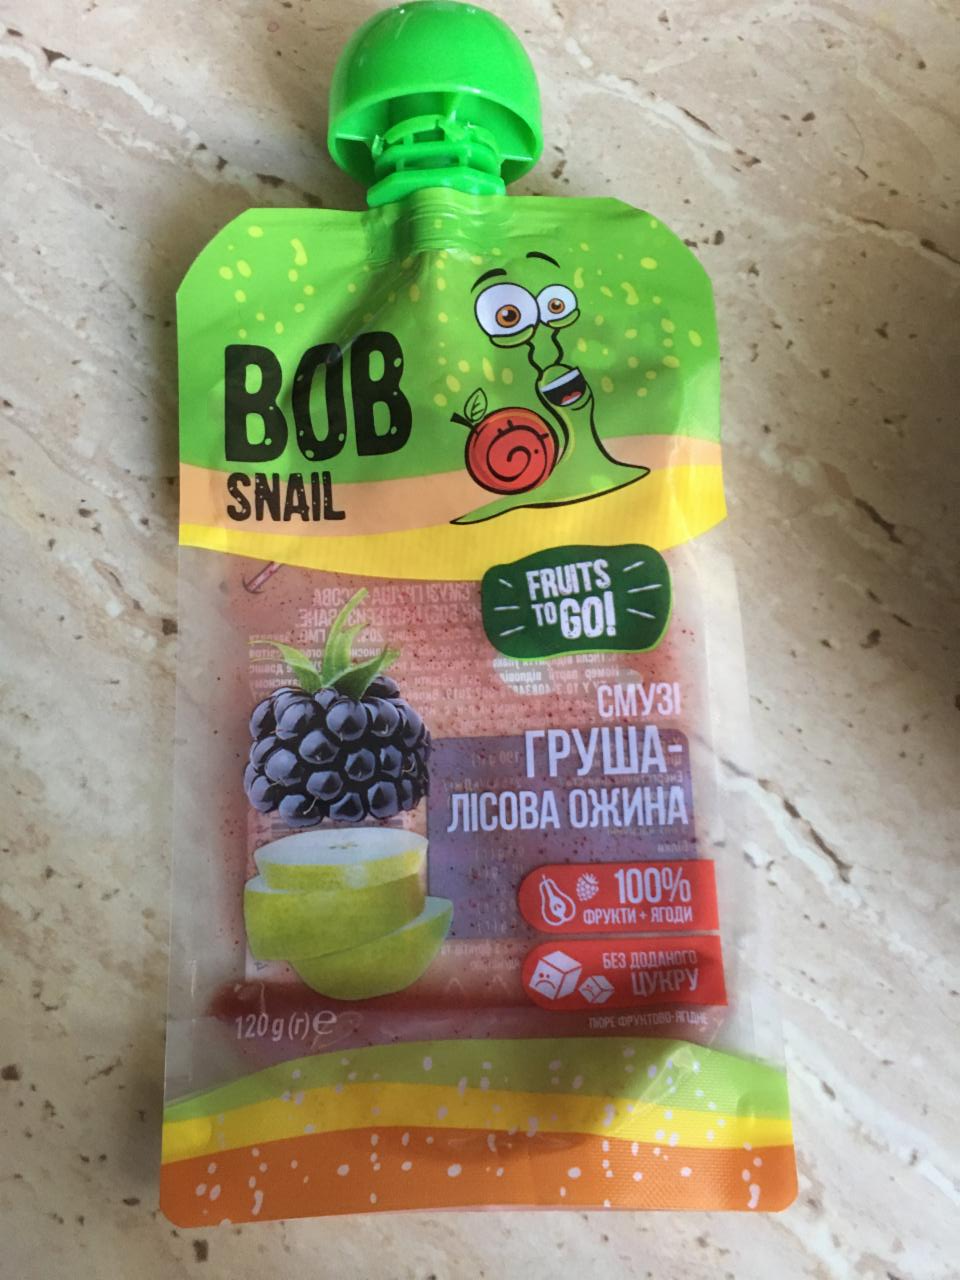 Фото - Пюре фруктовое смузи груша-лесная ежевика Bob Snail